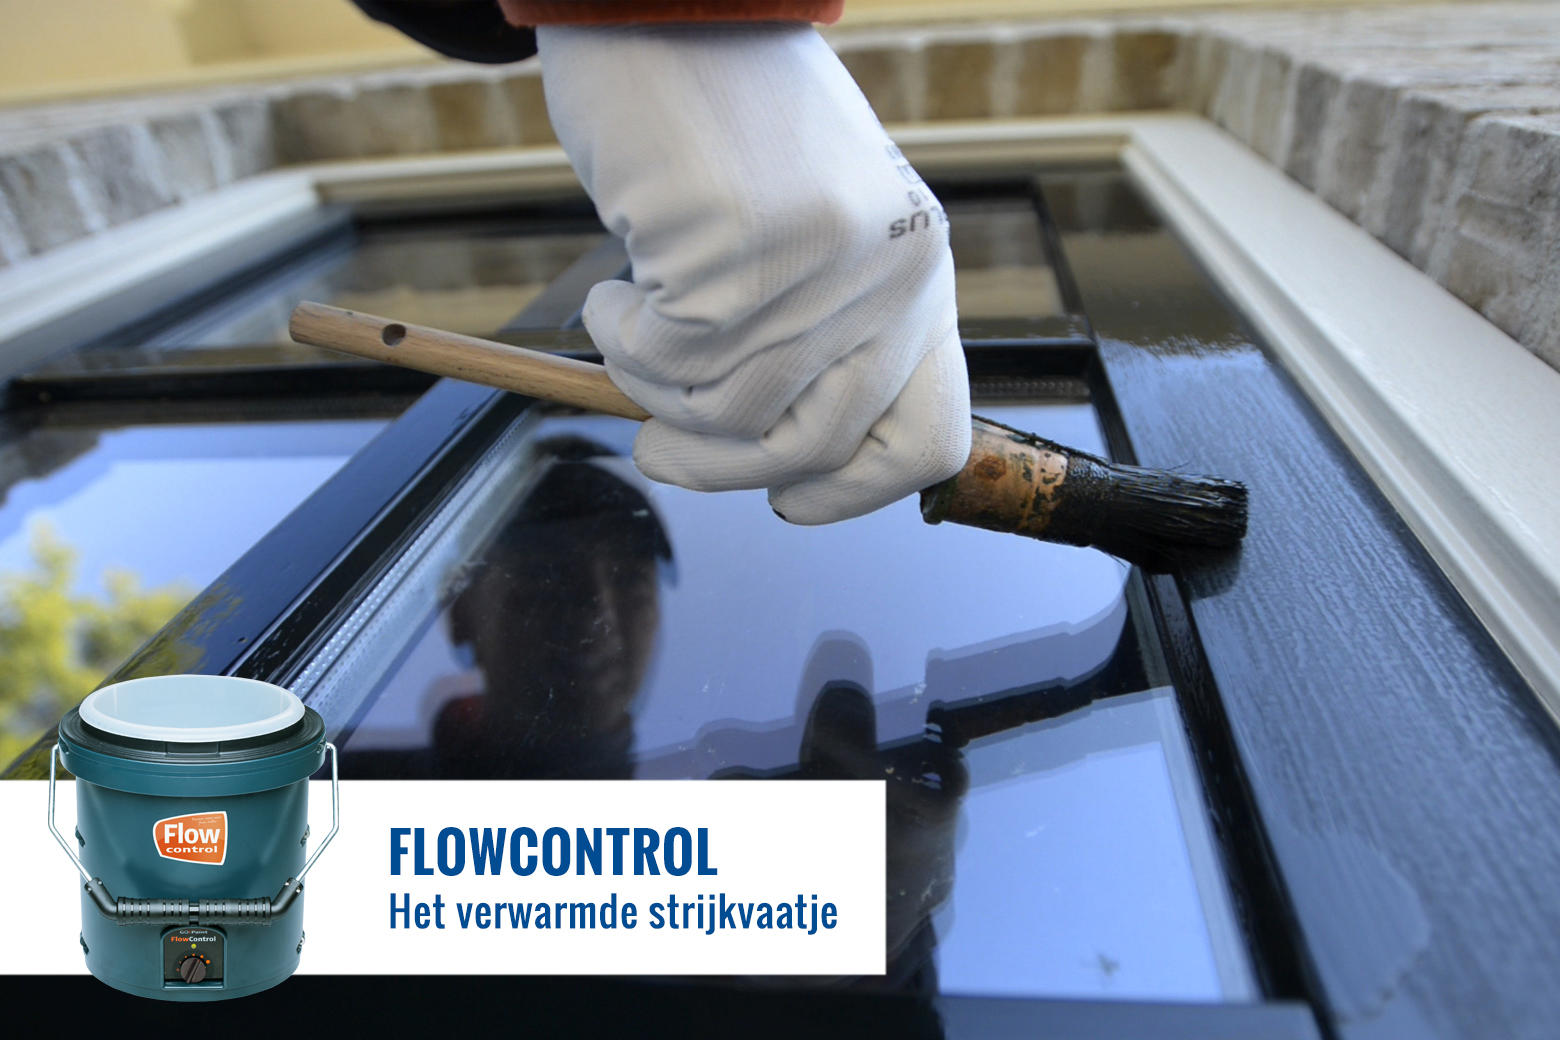 FlowControl omdat warme verf beter vloeit, ook schilderen bij lagere temperaturen.